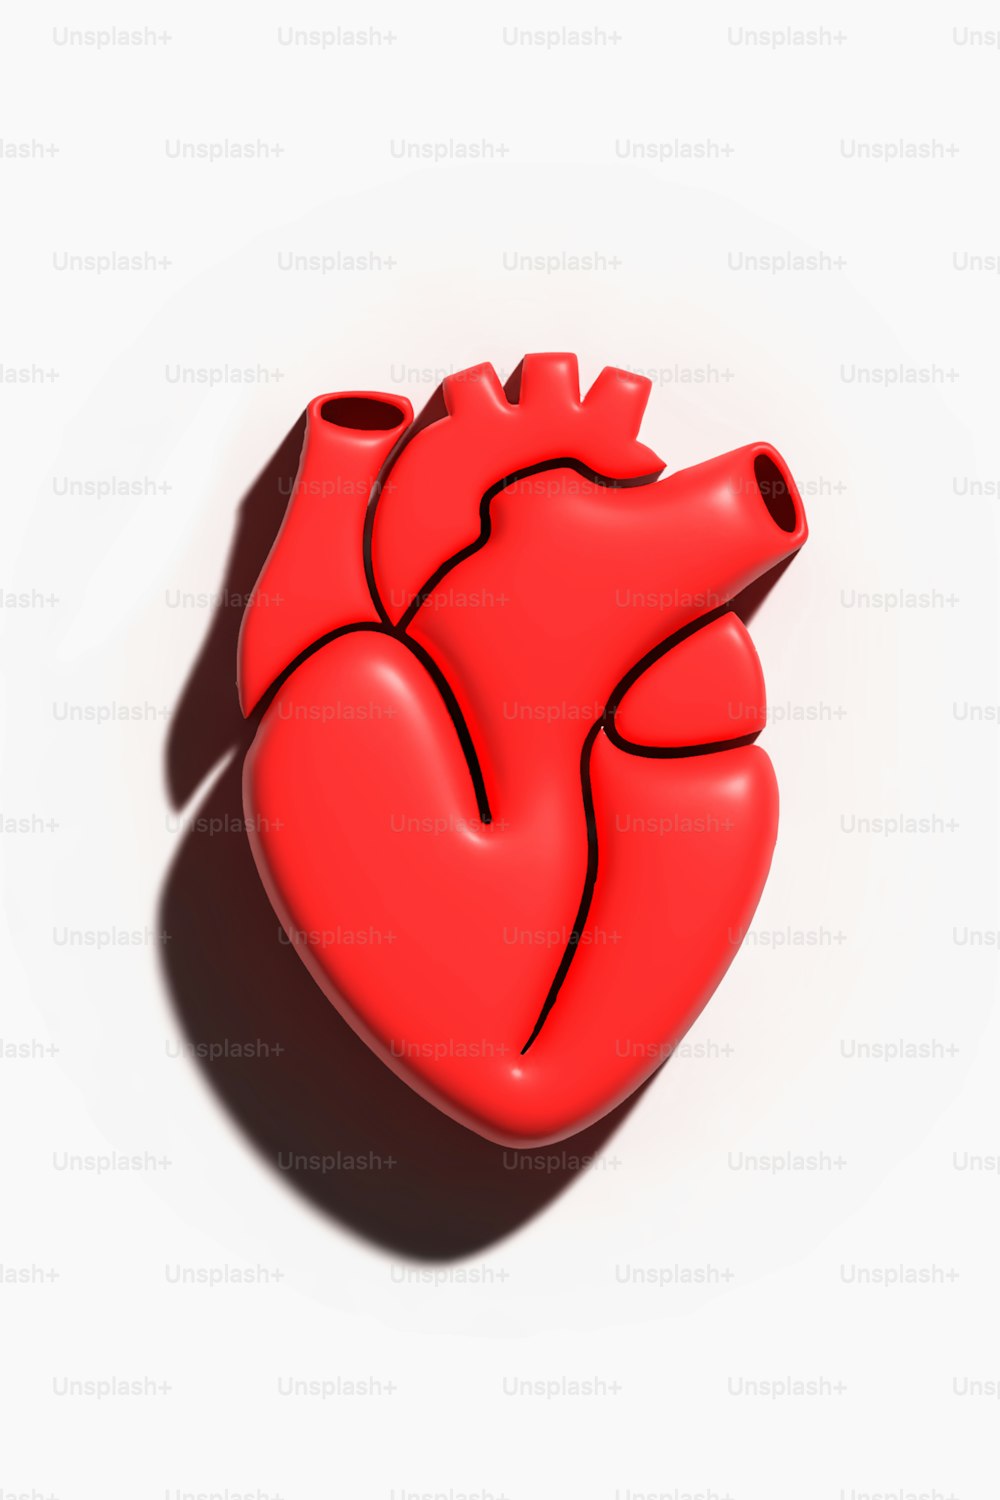 Un objeto rojo en forma de corazón sobre un fondo blanco